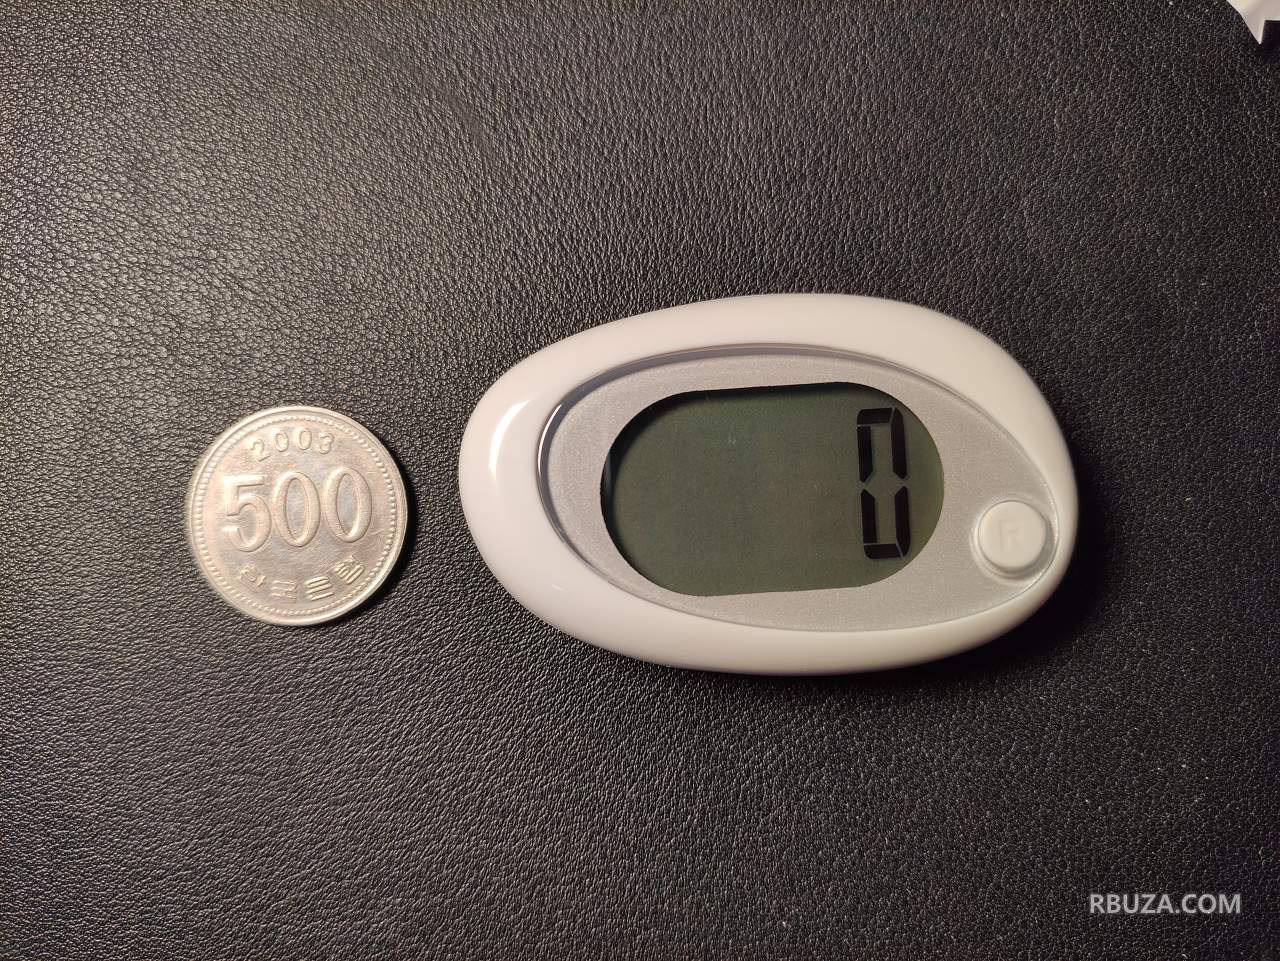 드레텍 노인용 만보기와 500원 동전 크기 비교. 액정 글씨가 매우 큽니다.